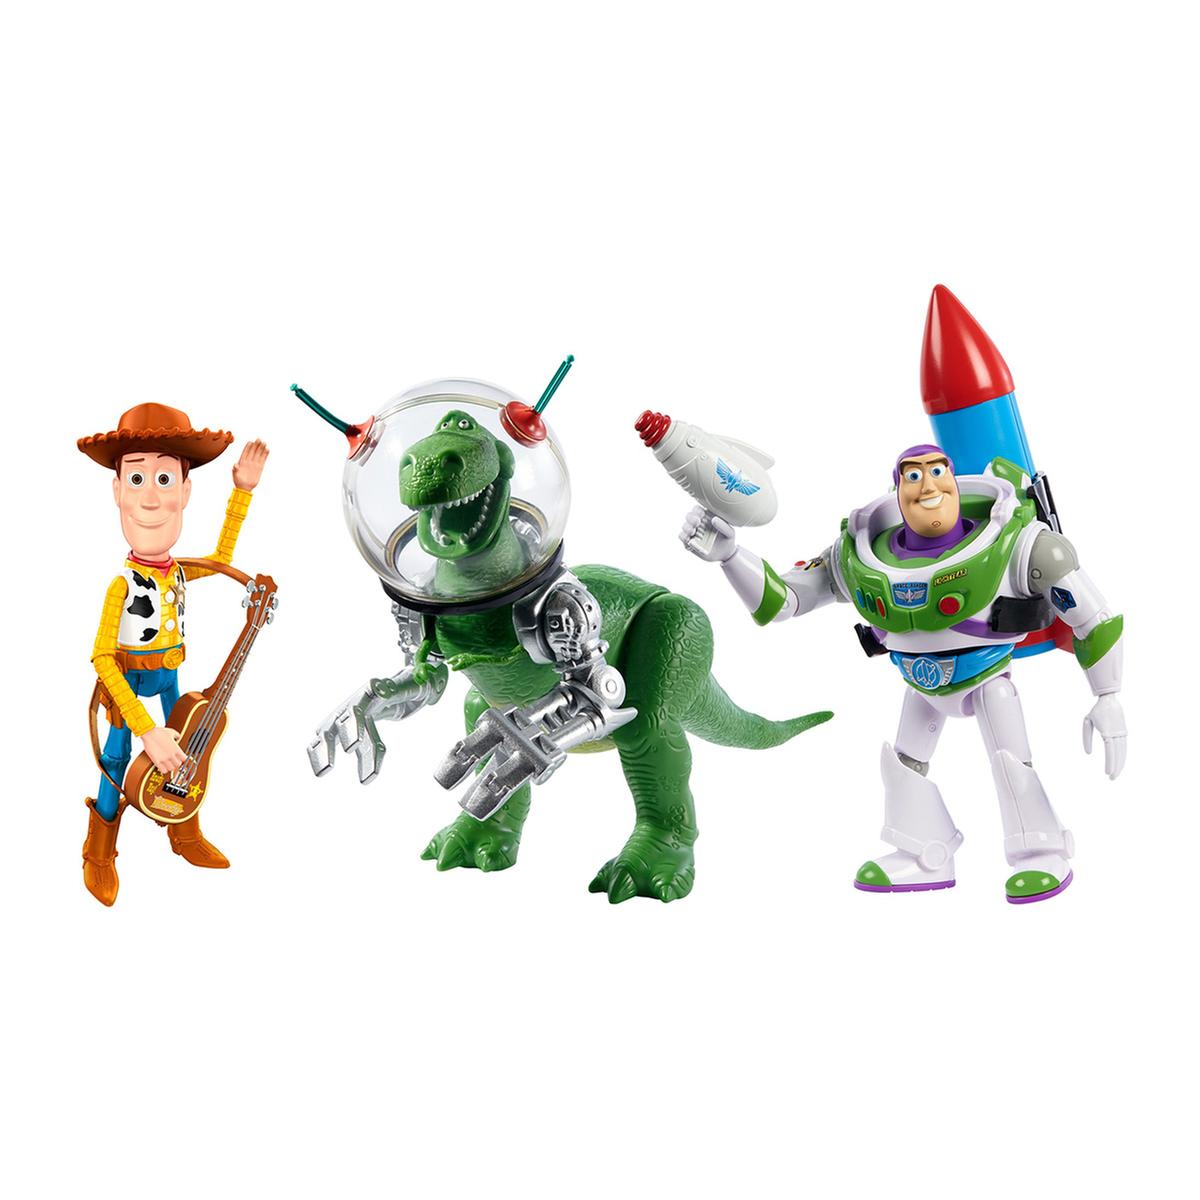 Toy Story - Figura con Accesorio Básico 25 Aniversario (varios modelos), Mini Mundos y otros coleccionables